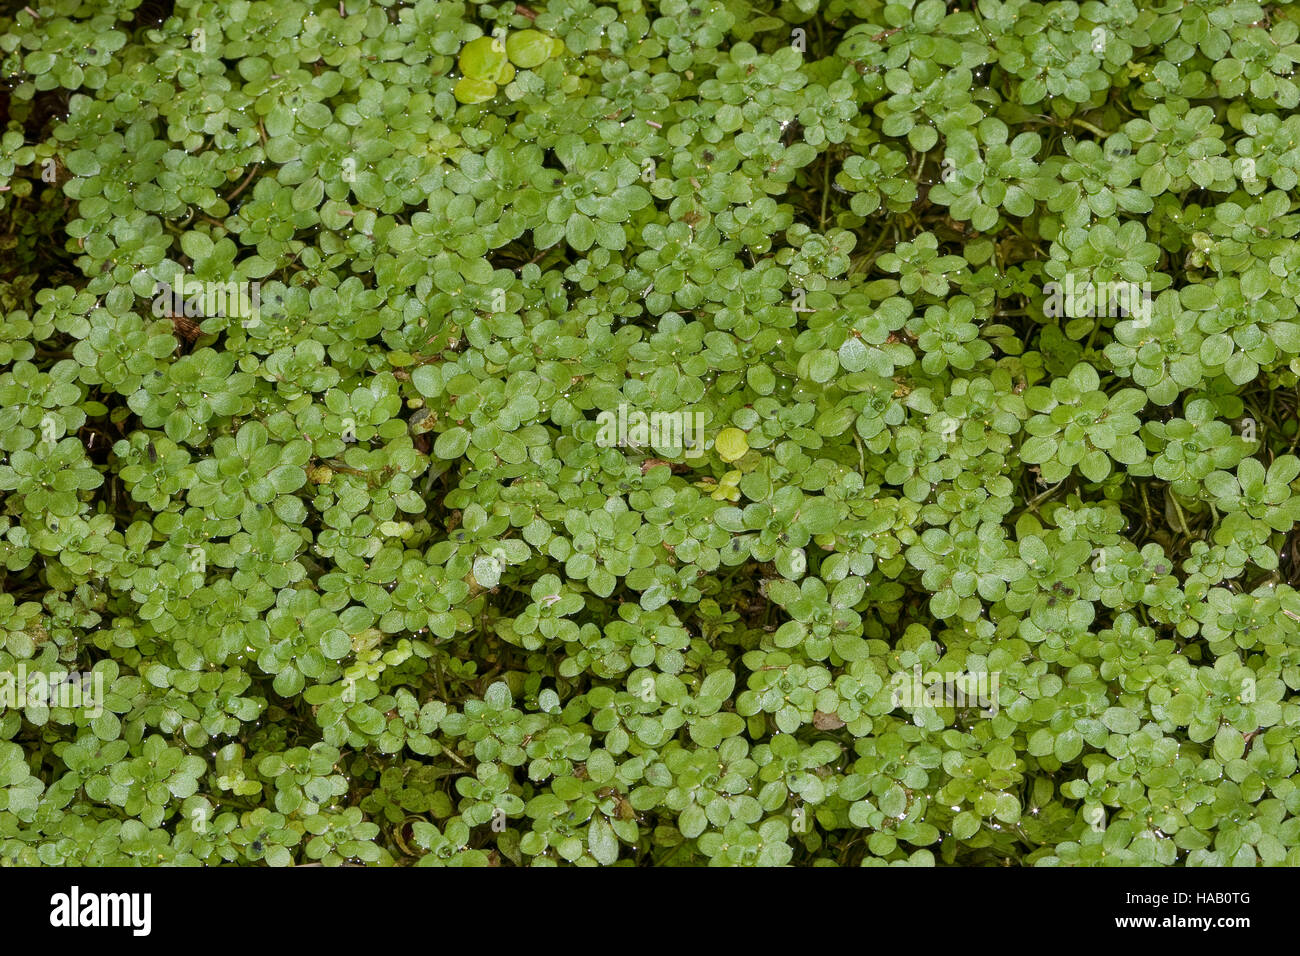 Wasserstern, Sumpf-Wasserstern, Callitriche palustris agg., Callitriche spec., Water Starwort Stock Photo